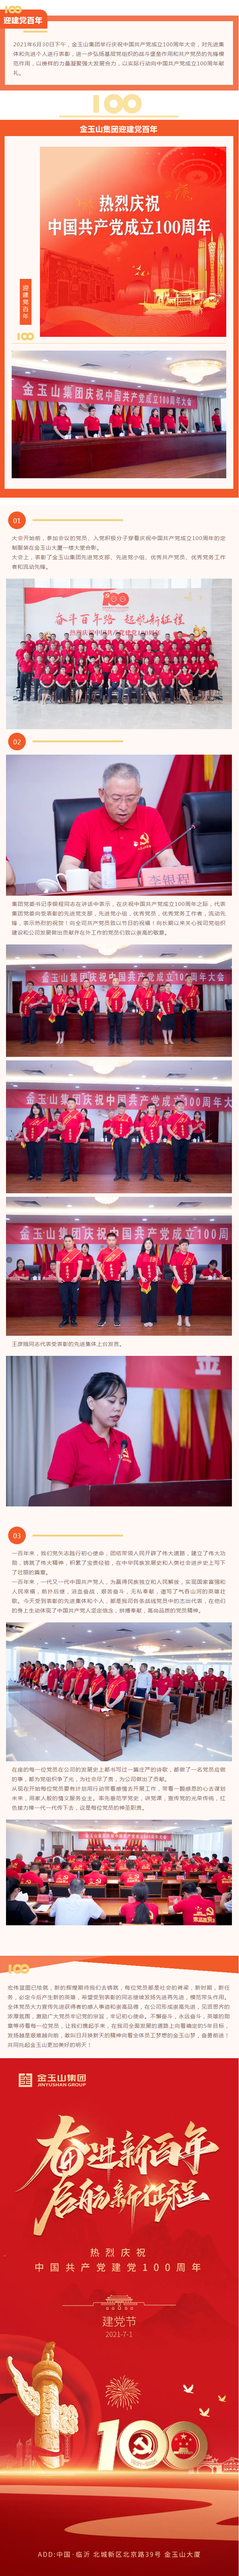 红葡亰8814游戏网站网址举行庆祝中国共产党成立100周年大会11.jpg